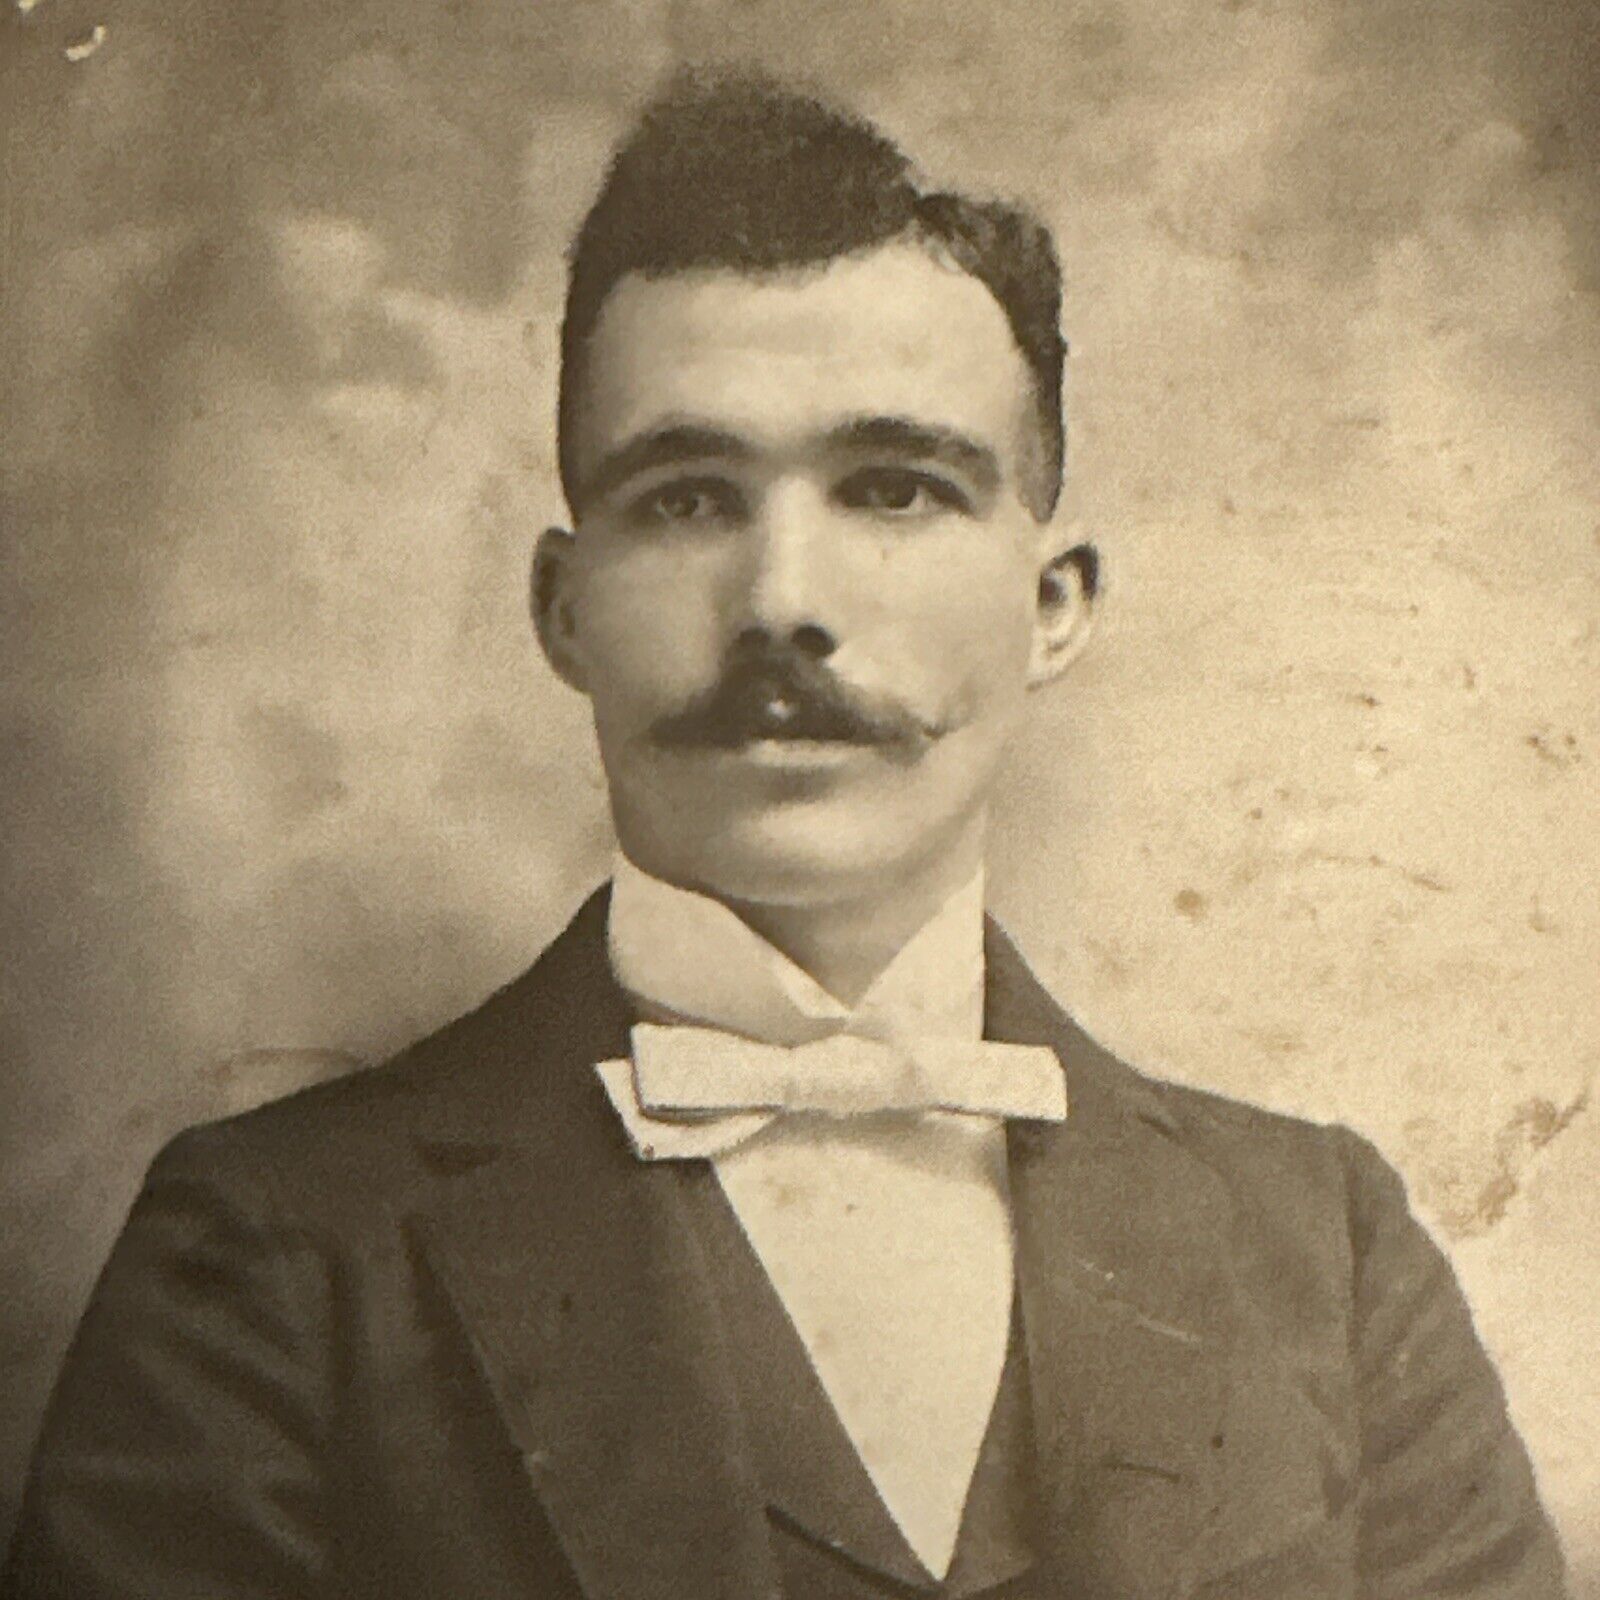 Dapper Gentleman Cabinet Card with Mustache & Bowtie